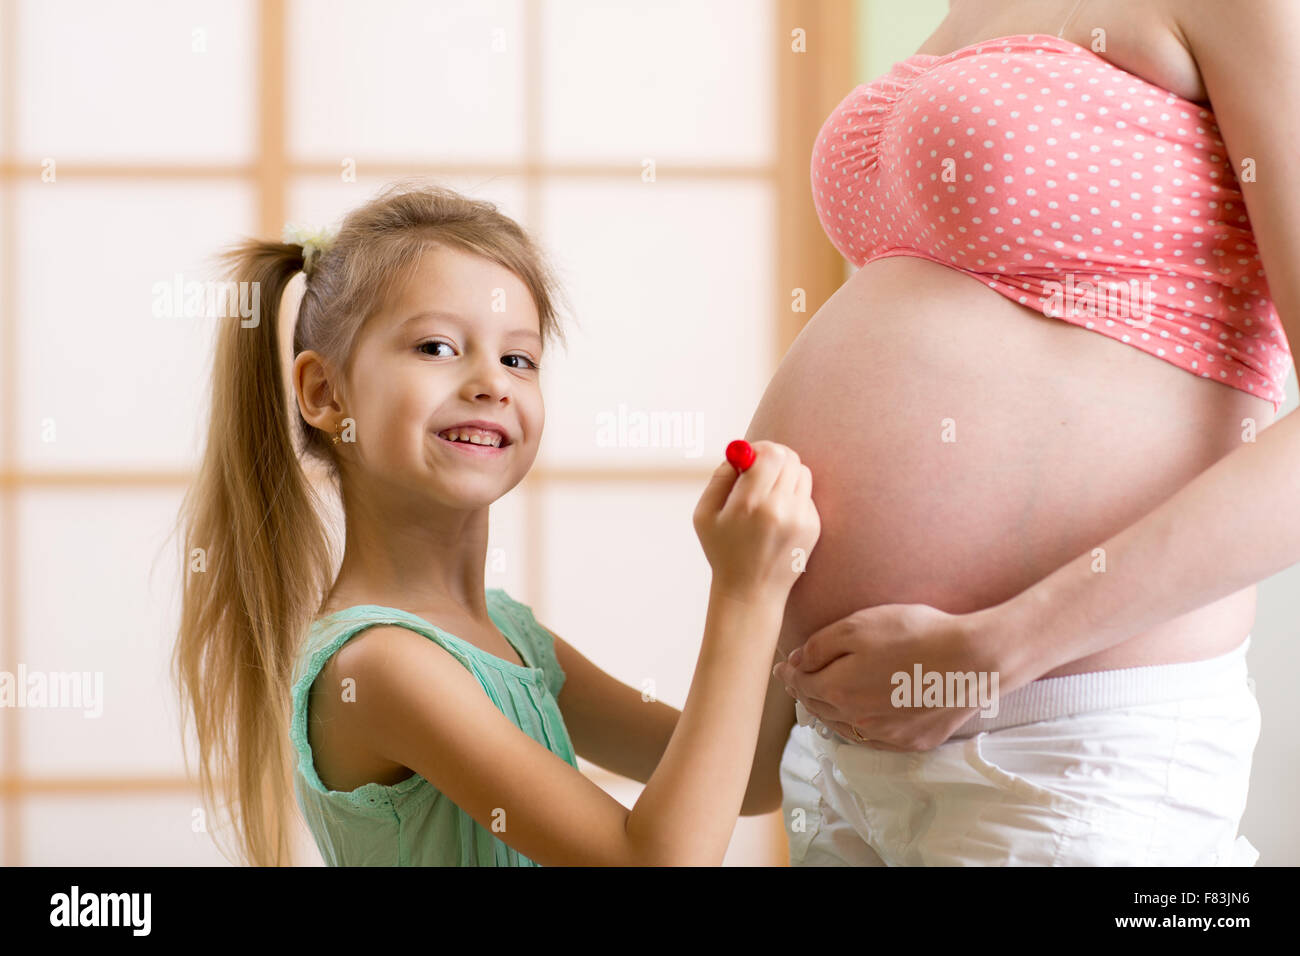 Niedliche kleine Mädchen malt auf den Bauch der schwangeren Mutter Stockfoto